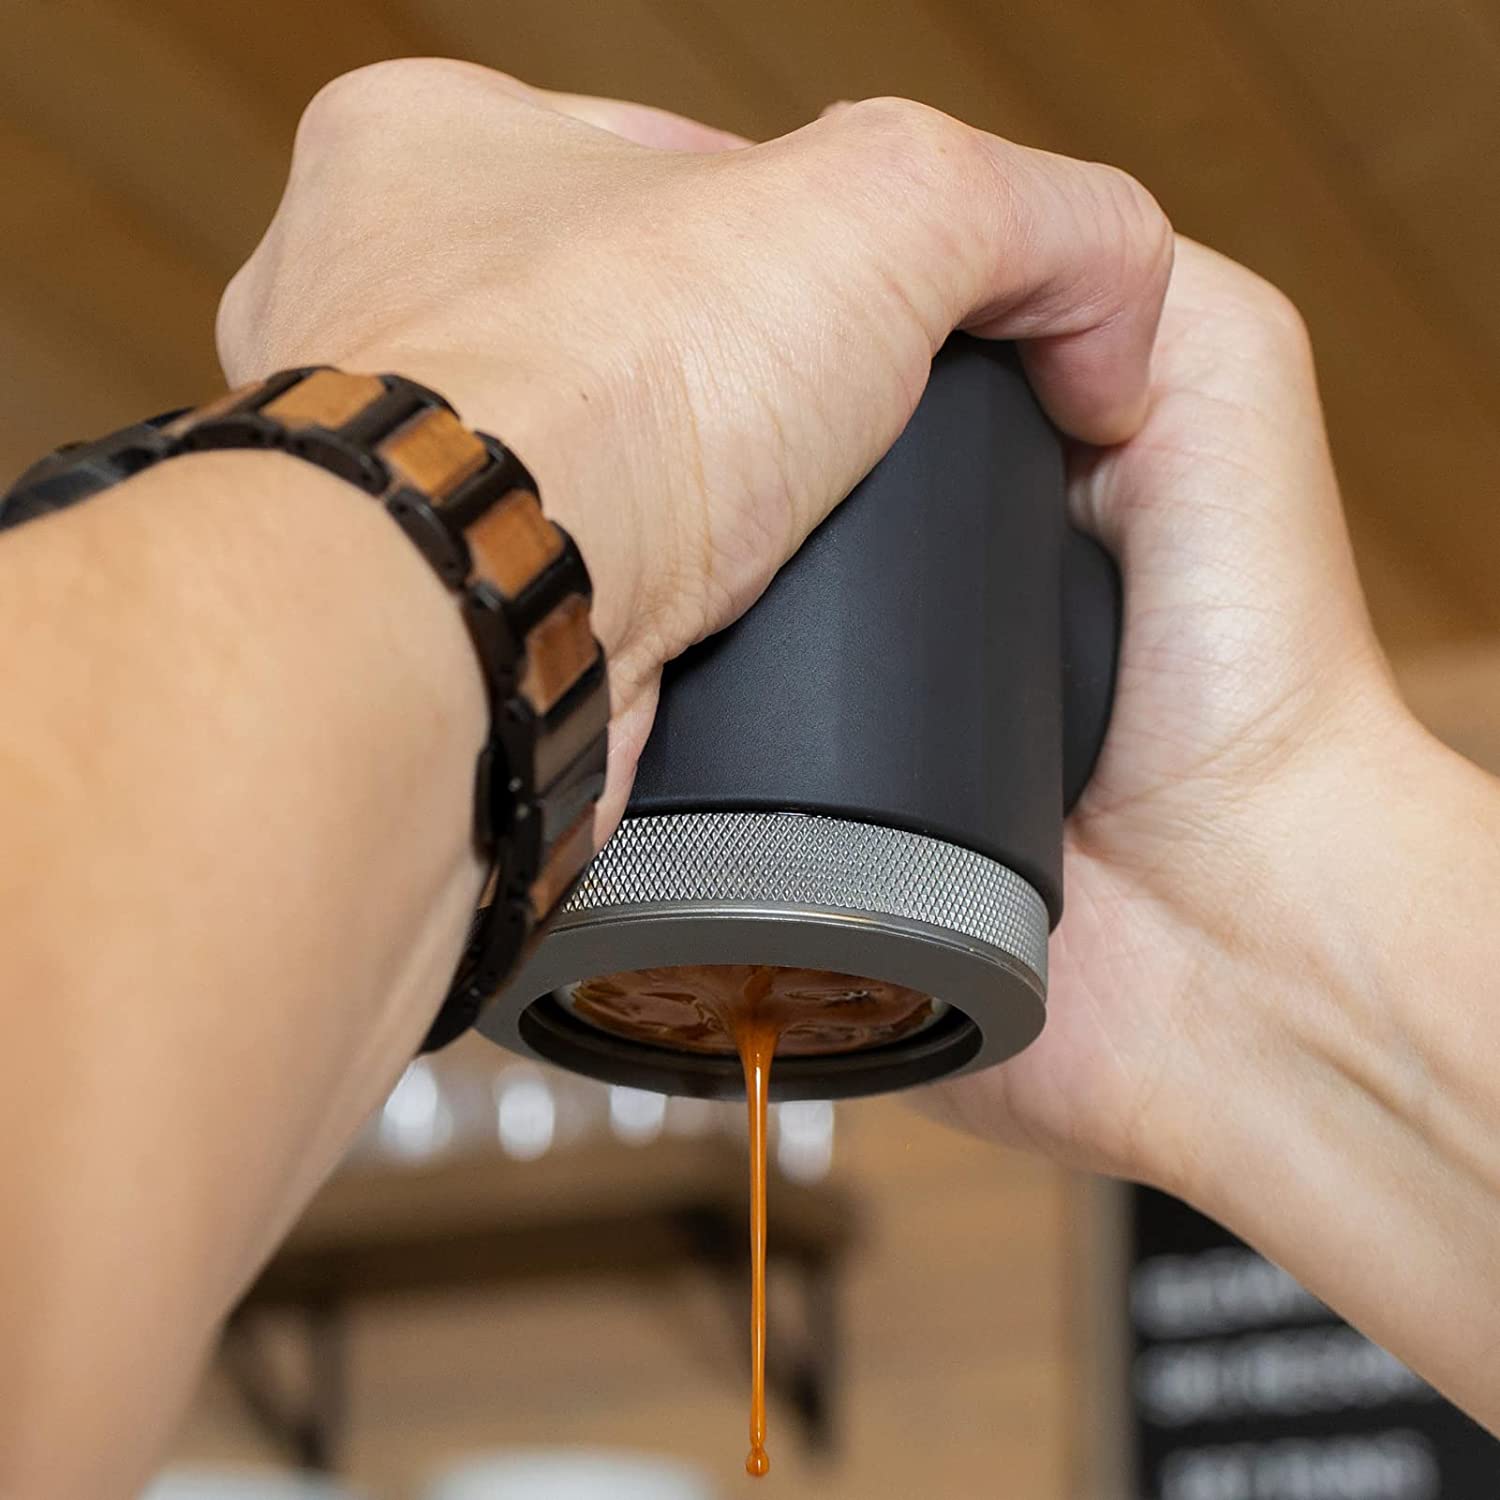 World's Smallest Espresso Machine Picopresso